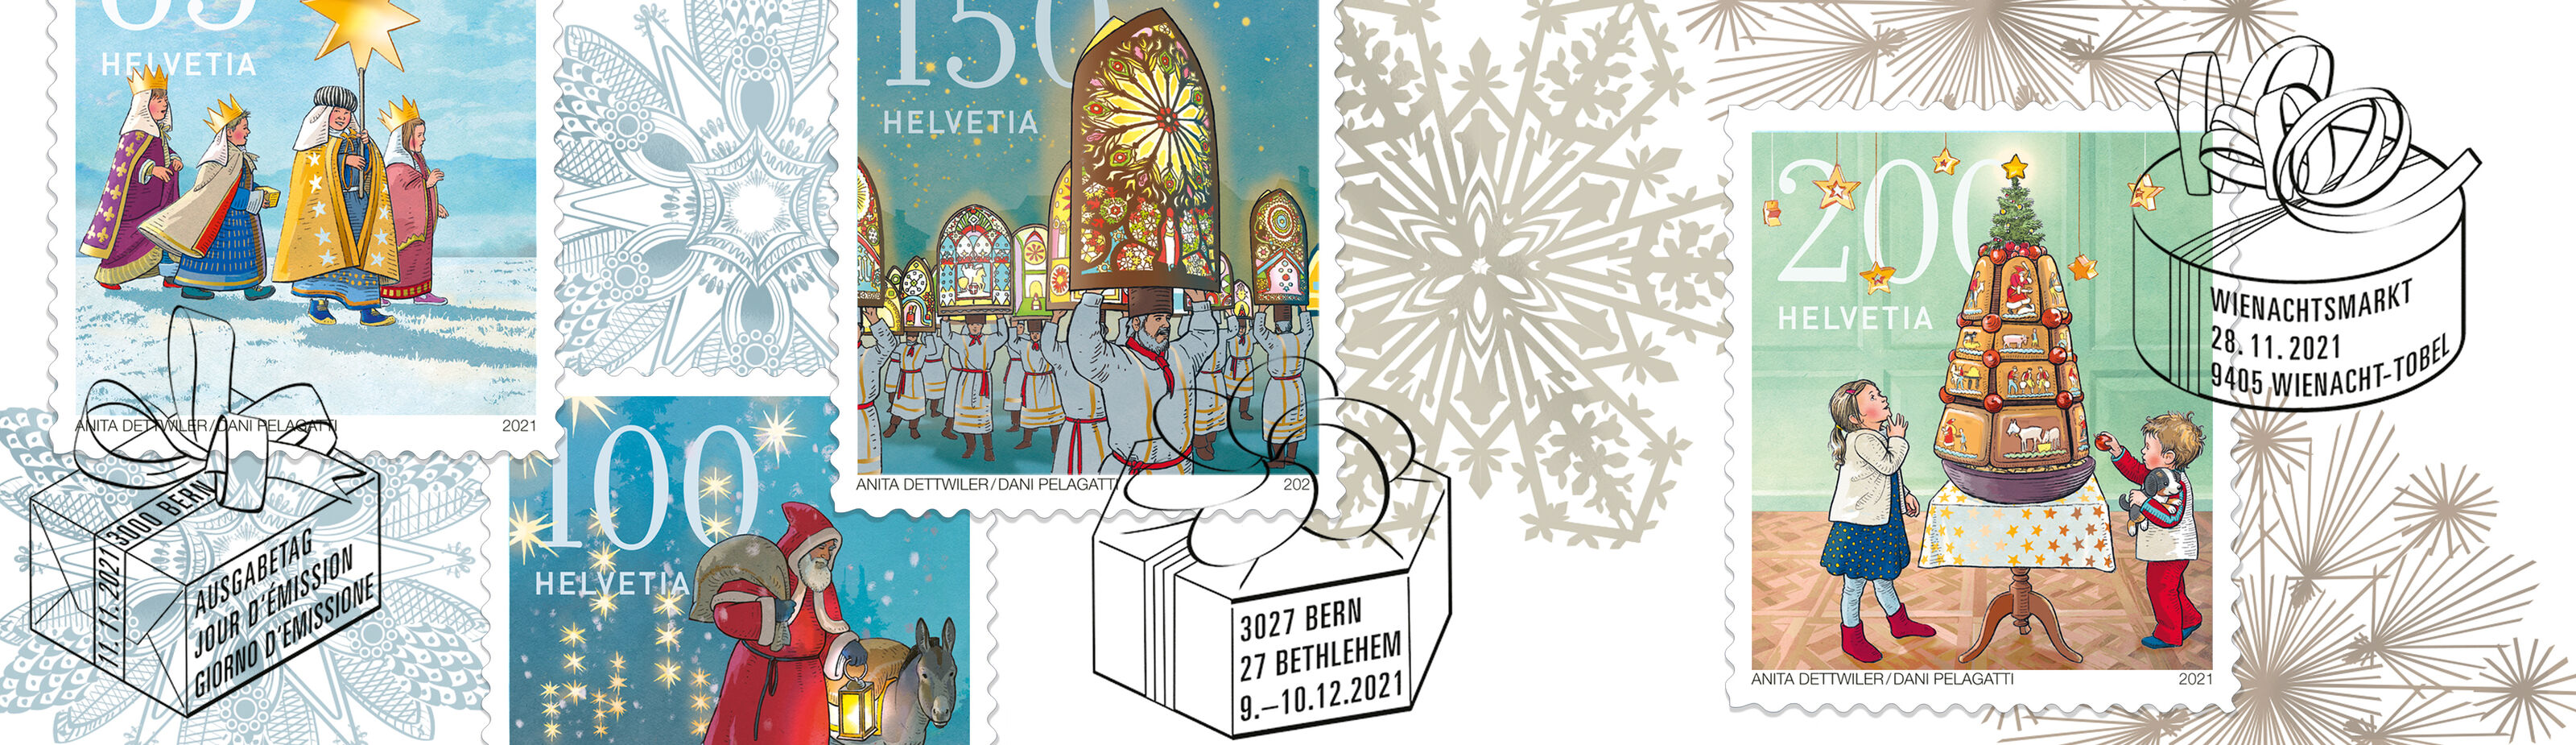 Bunterhund_Briefmarke_Post-Schweiz_Weihnachten-21-Brauchtum_alle_-_bunterhund-Illustration